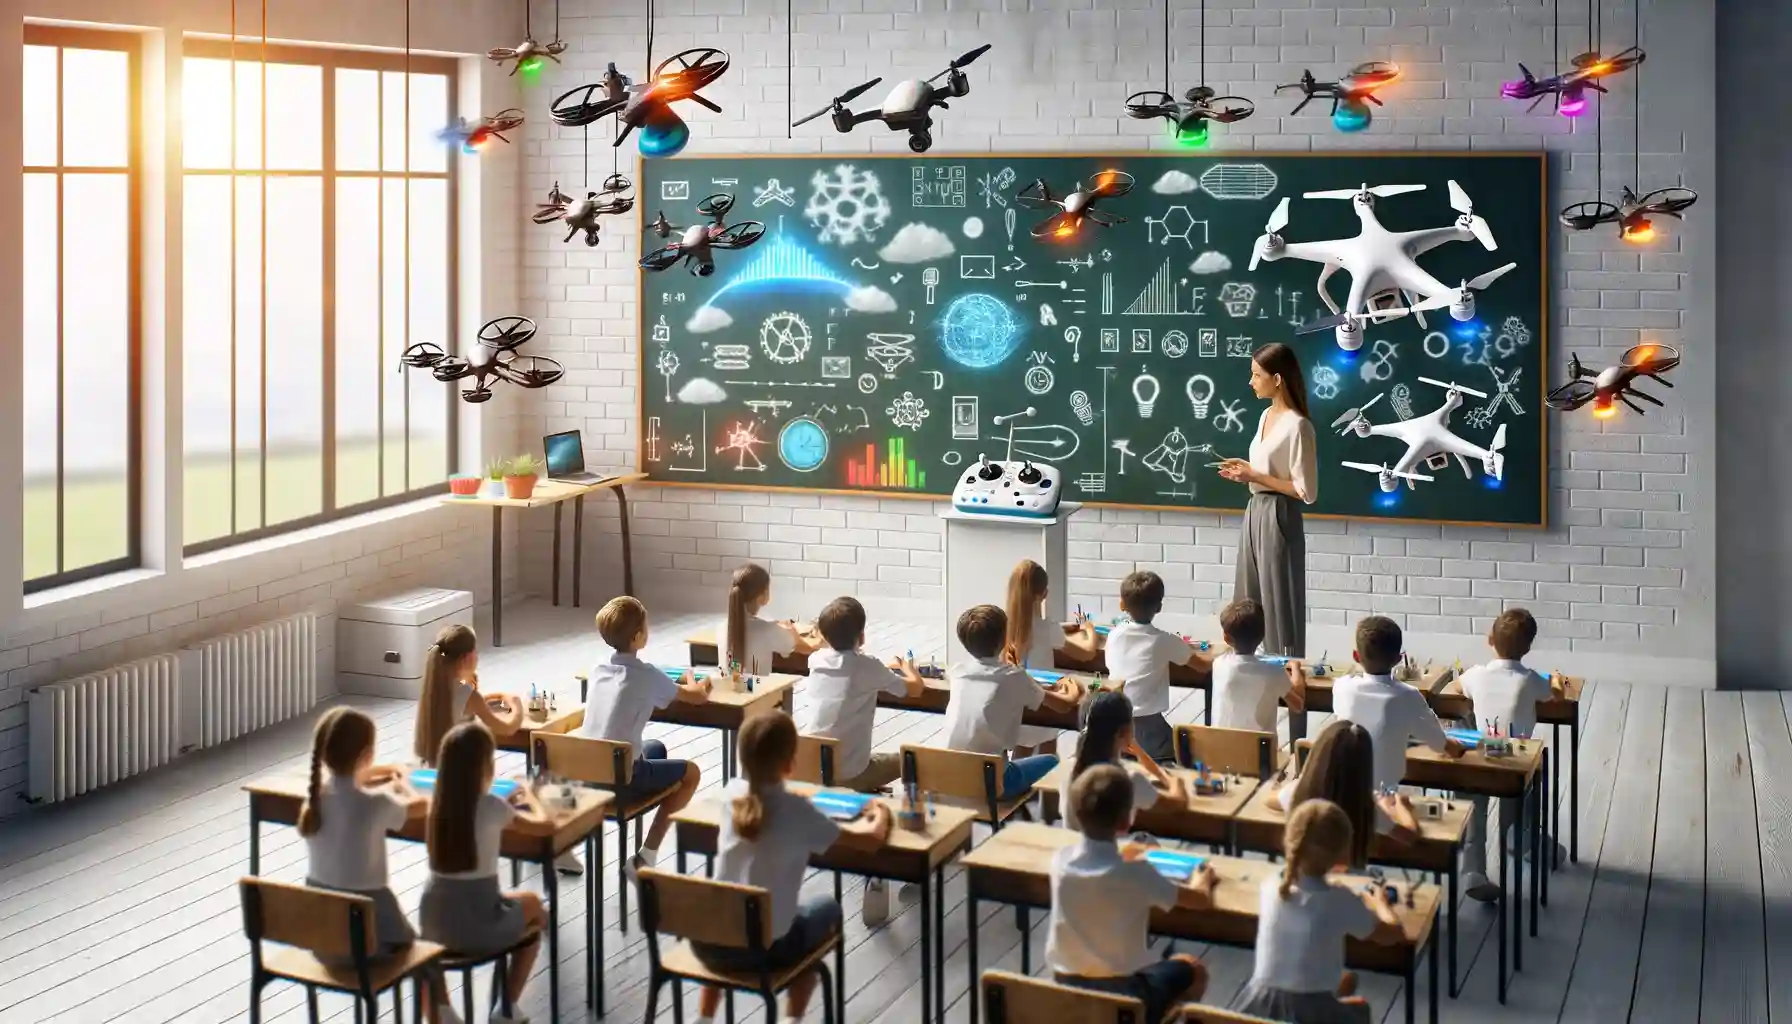 Mini Drones in Education: STEM Educational Science Kit